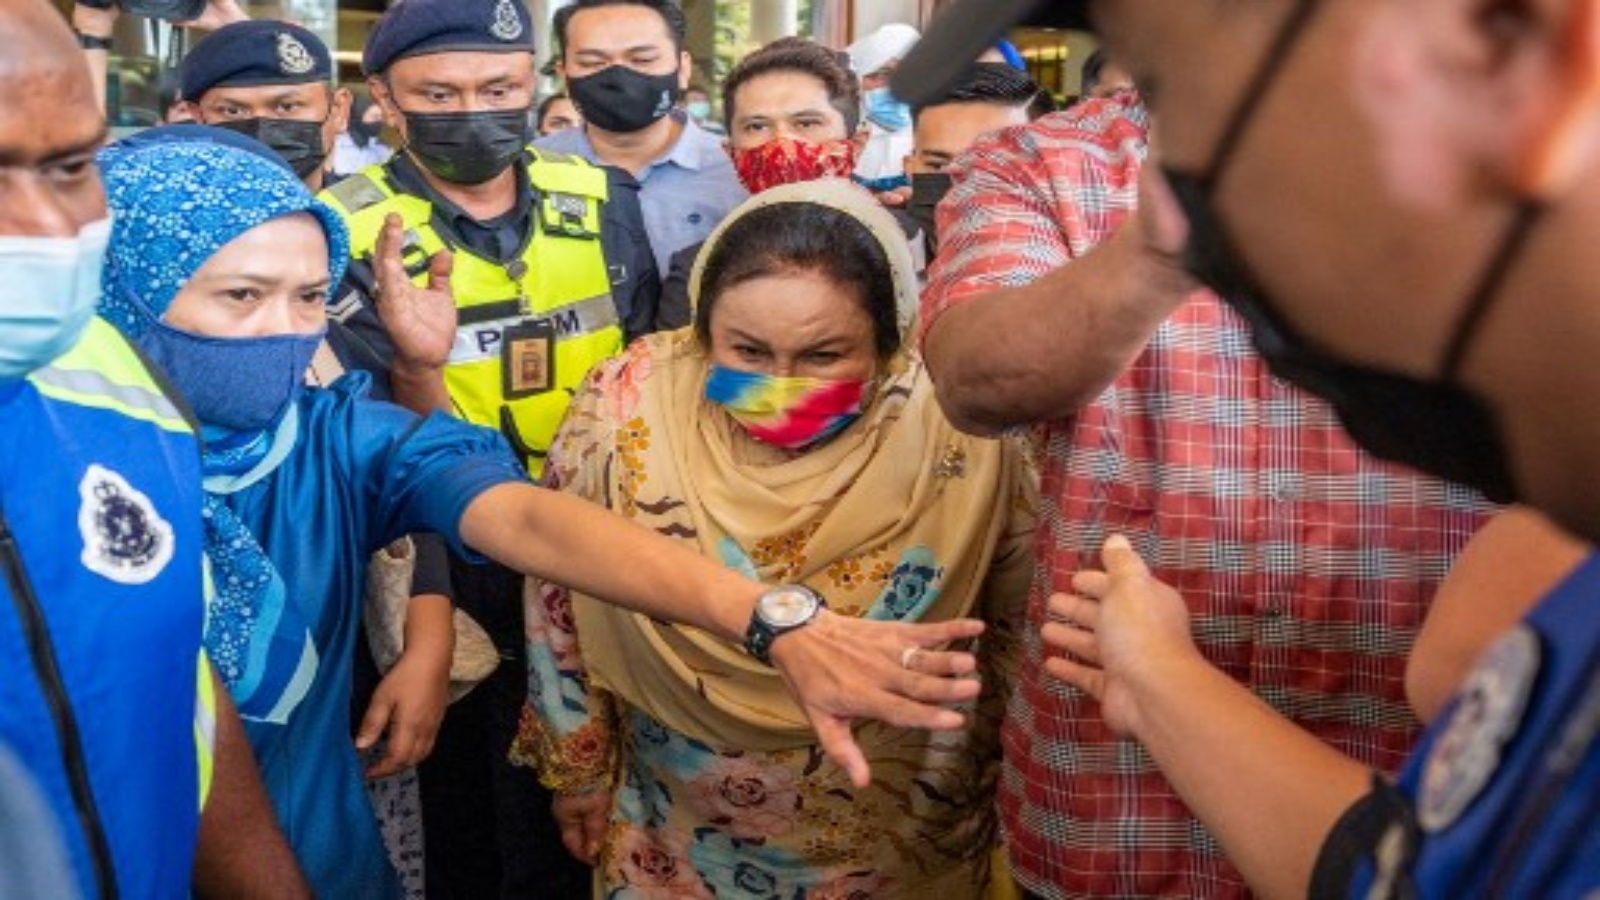 روزما منصور (وسط) ، زوجة رئيس الوزراء الماليزي السابق نجيب رزاق ، تغادر مجمع محاكم دوتا بعد جلسة استماع في محاكمتها في قضية الفساد في كوالالمبور في 18 فبراير 2021